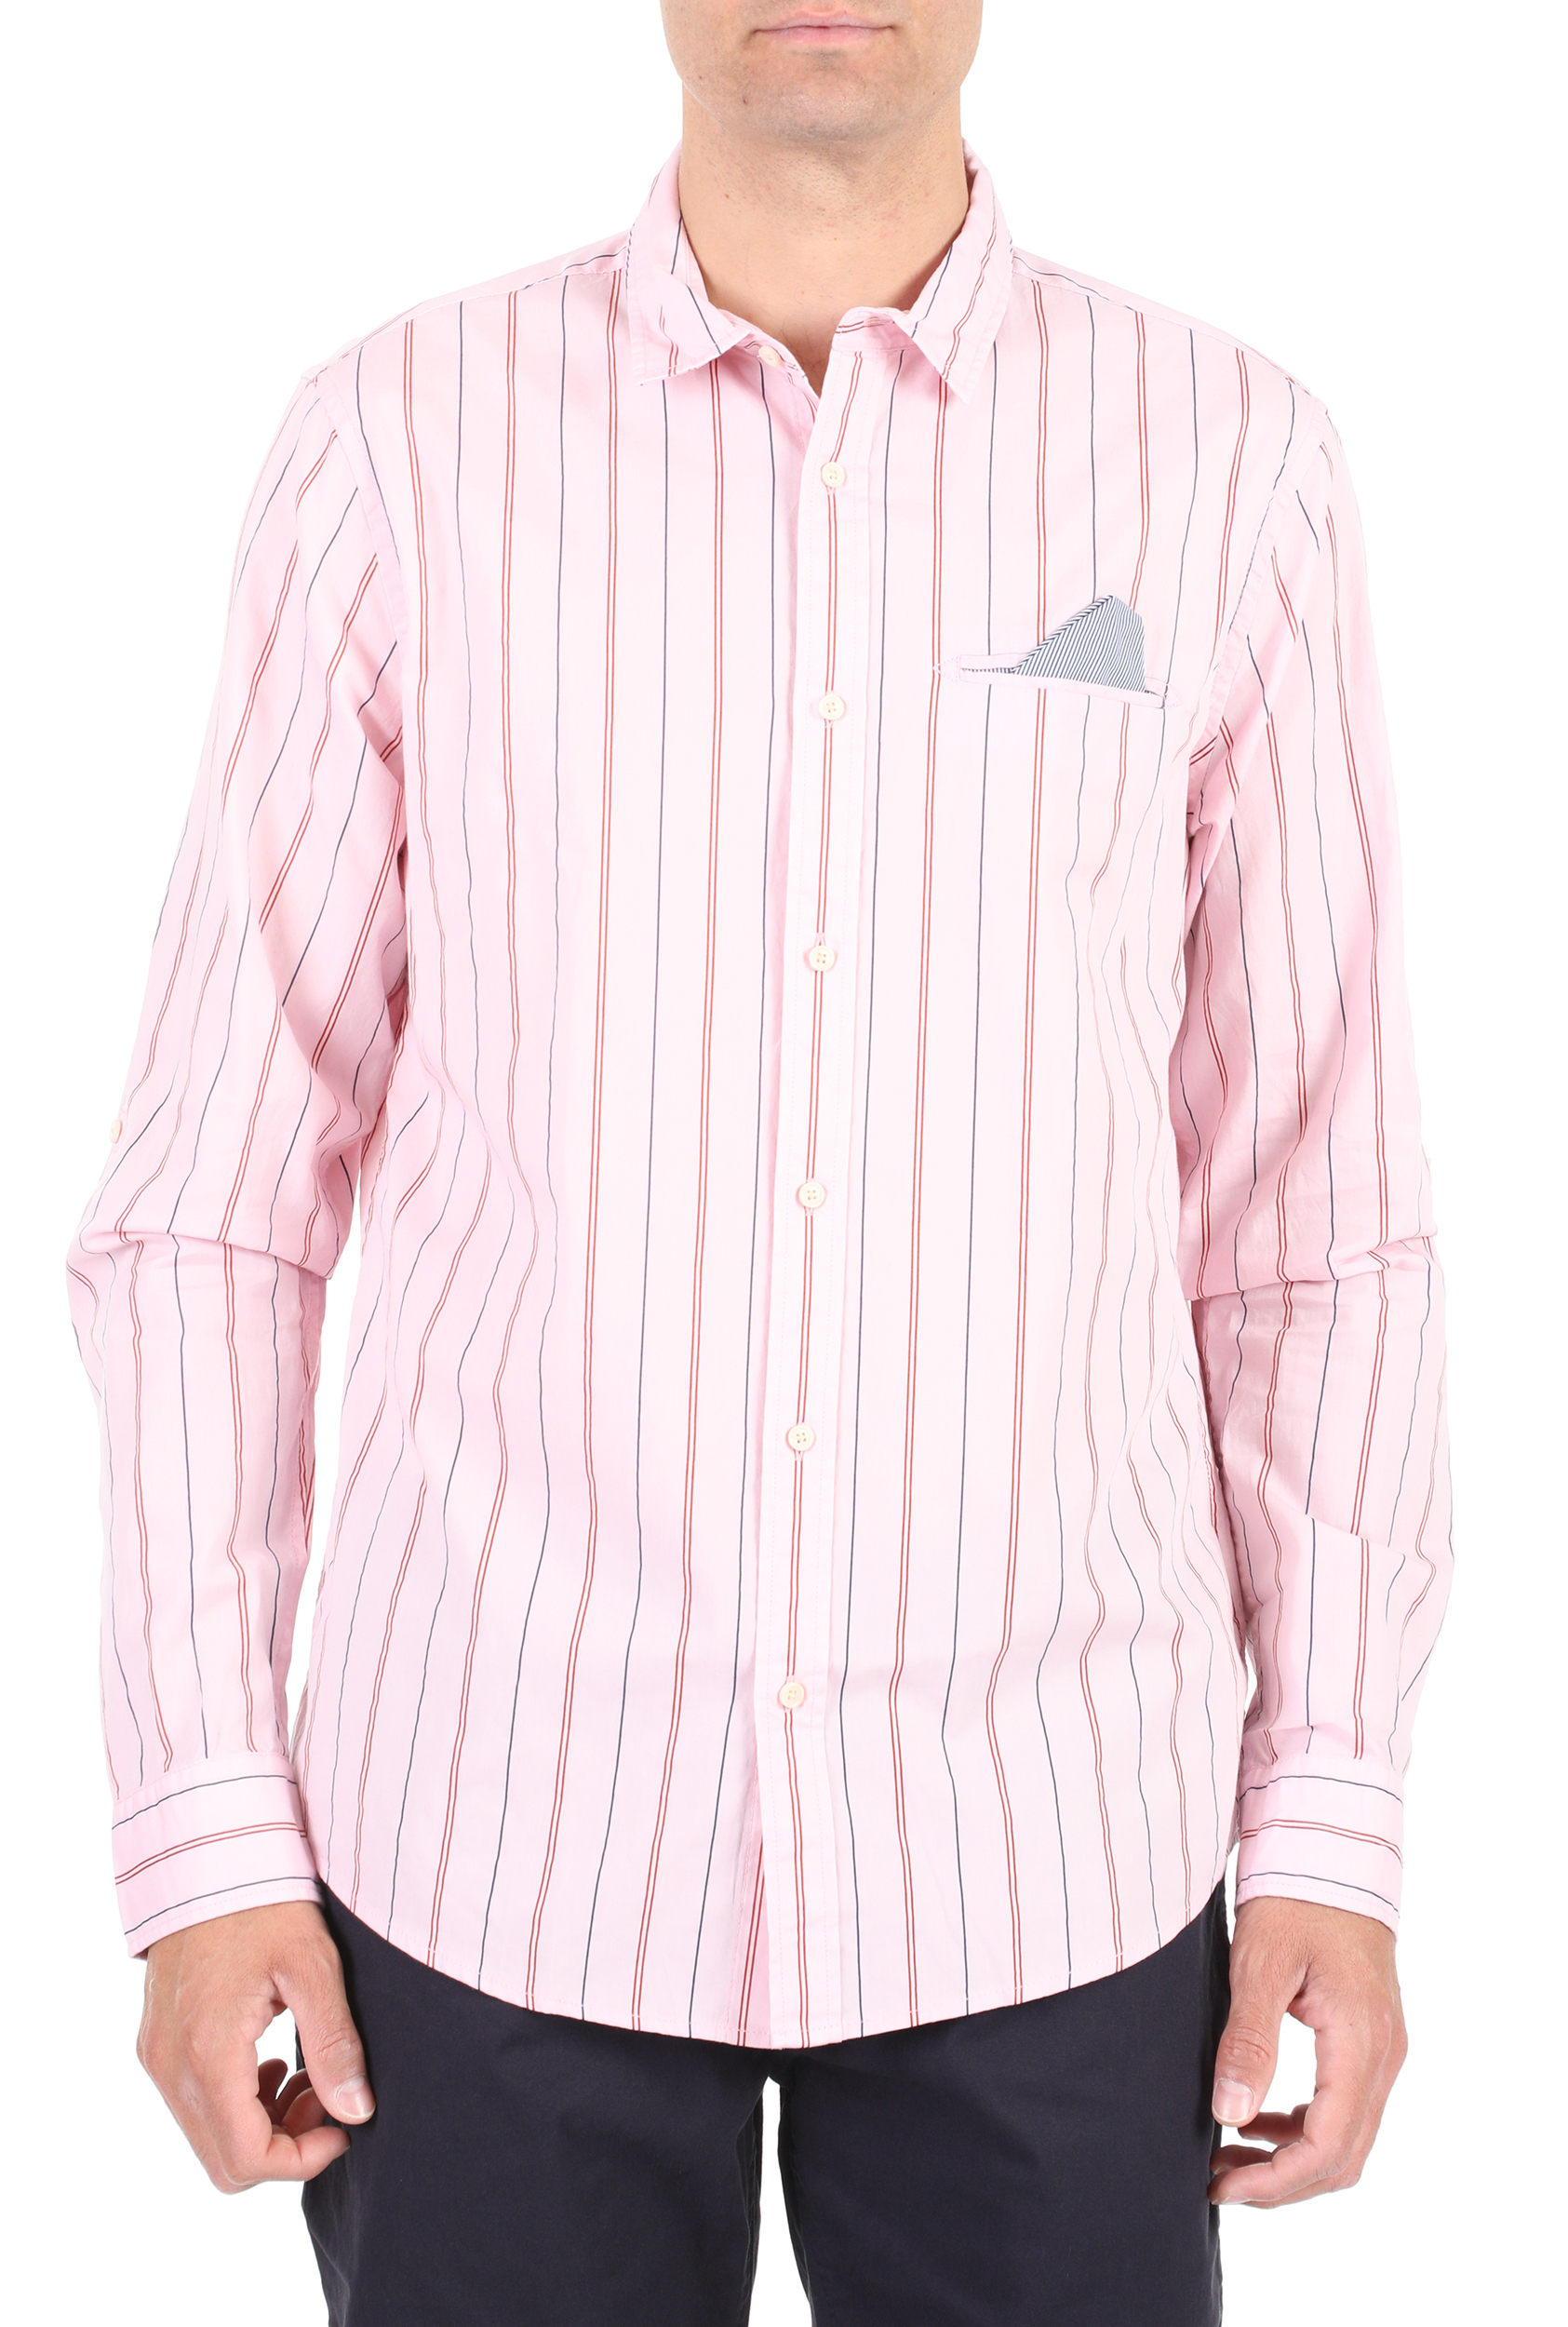 SCOTCH & SODA – Ανδρικό πουκάμισο SCOTCH & SODA ροζ 1782616.0-0206